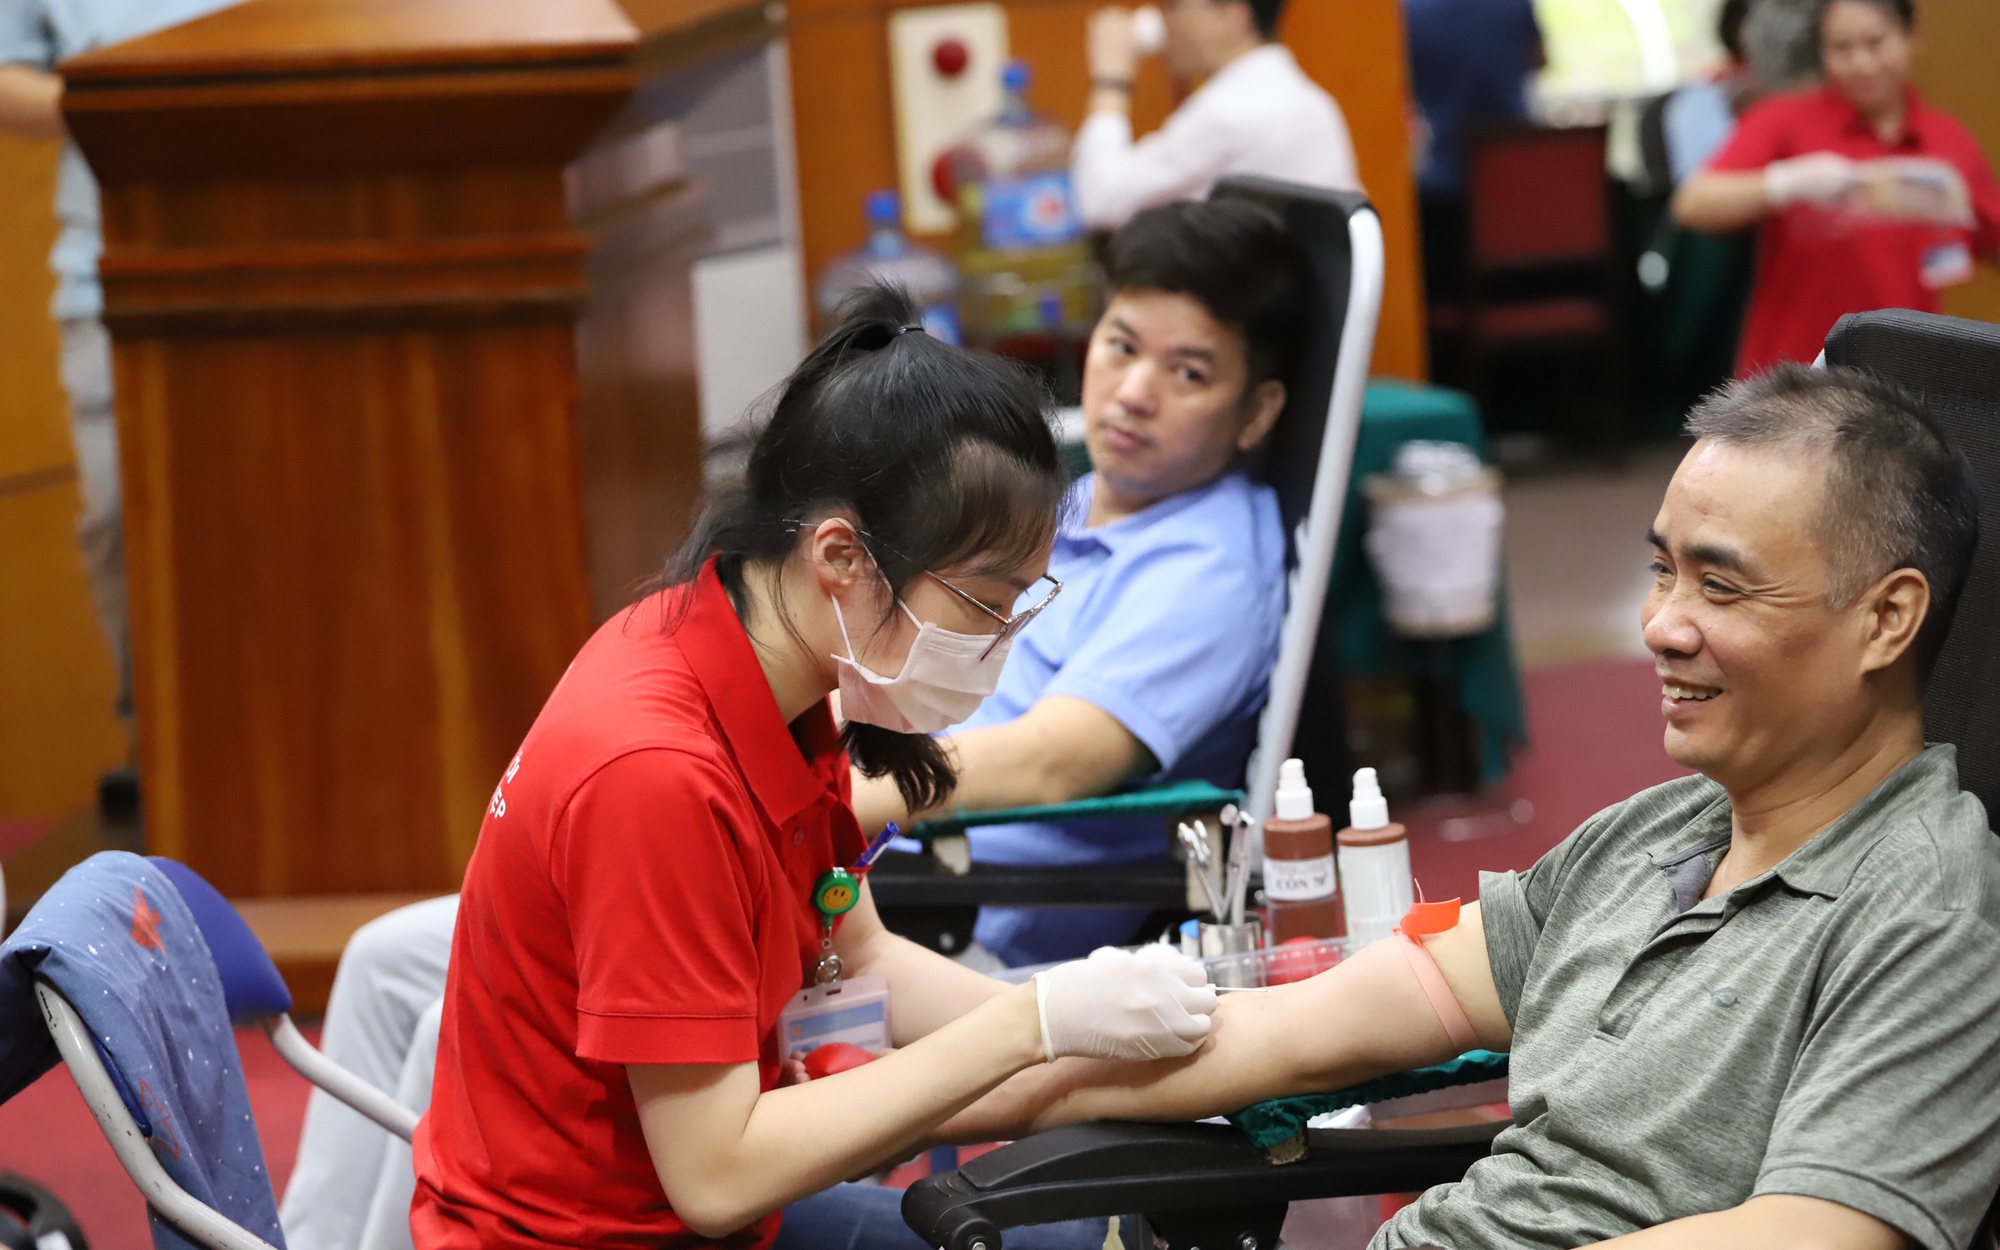 Hàng trăm cán bộ ngành y hiến máu cứu người hưởng ứng ‘Lễ hội Xuân hồng’ năm 2024